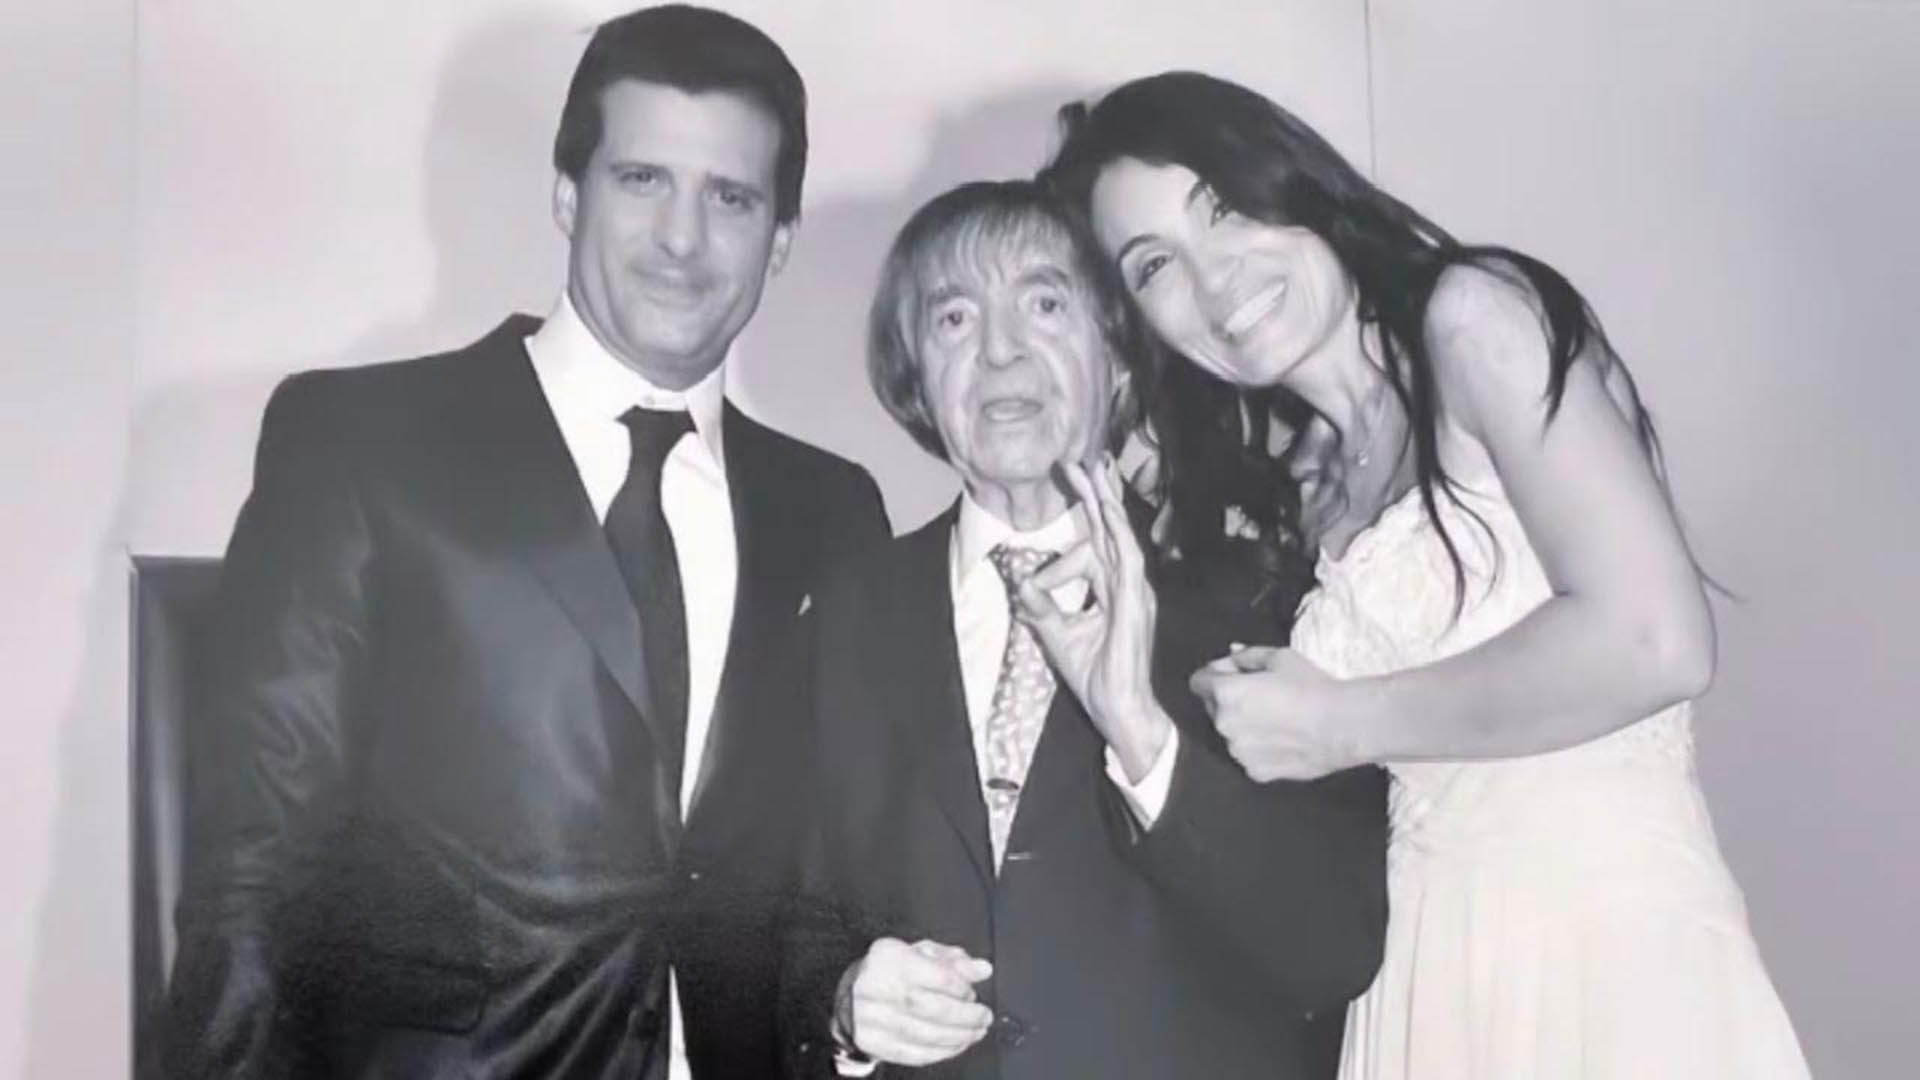 José María Listorti en el día de su boda con Mónica González Merlo (2012) junto a Carlos Balá, uno de sus más preciados invitados